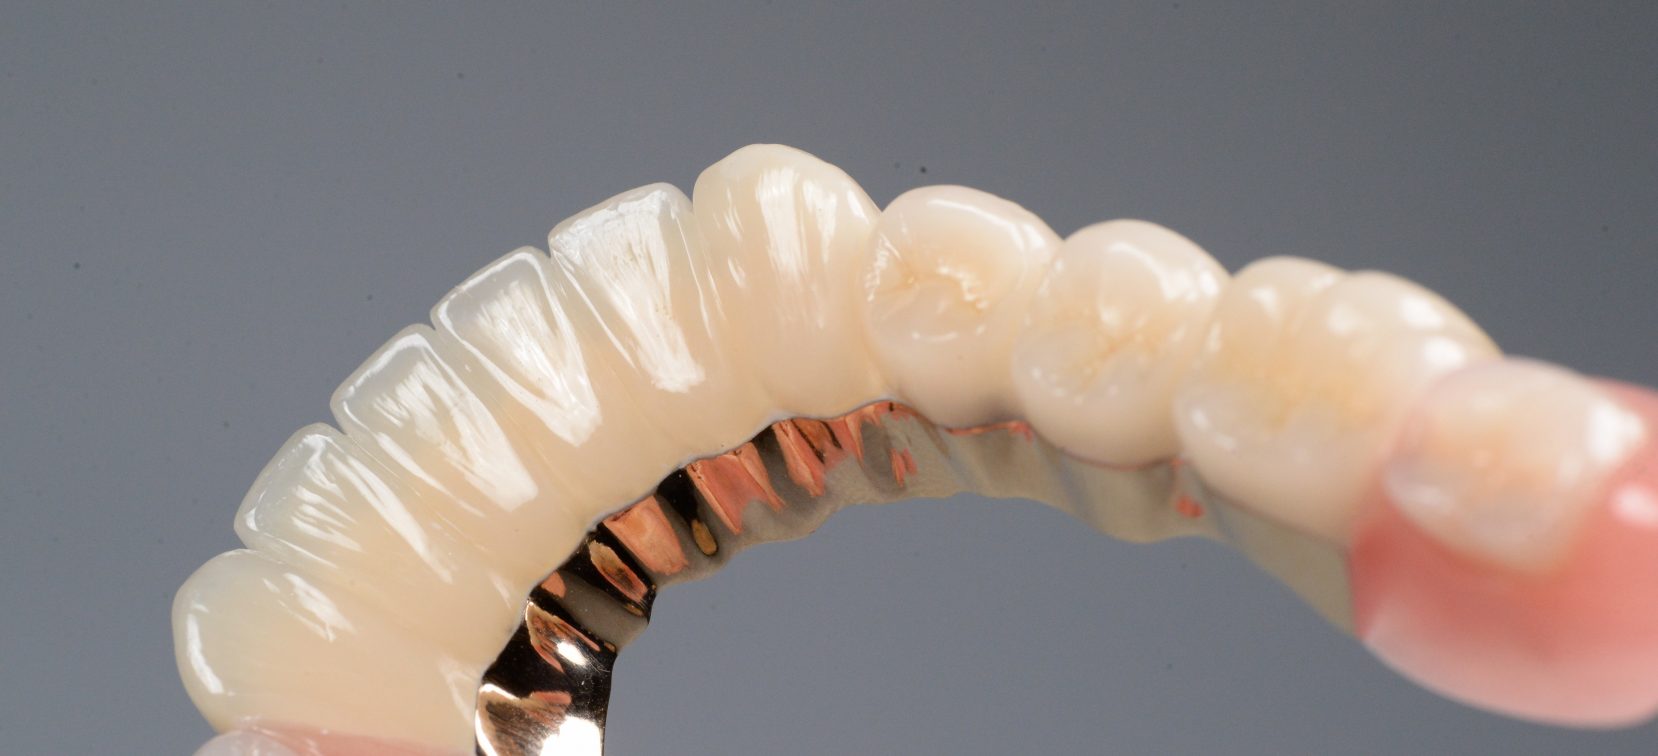 奥歯が4本ない場合の治療方法について